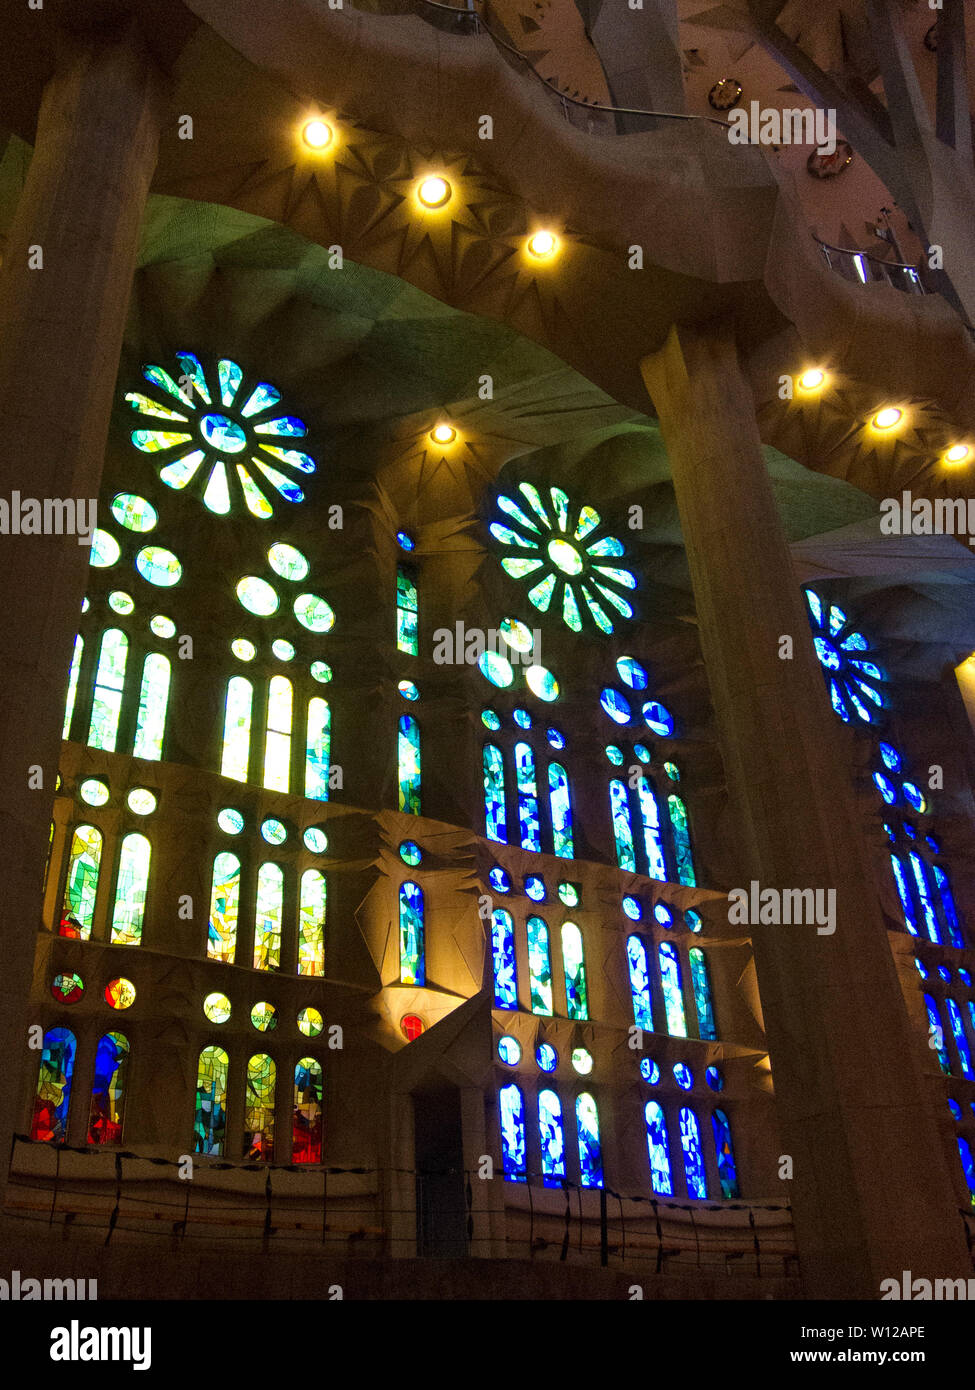 Buntglasfenster in Gaudís Kathedrale Sagrada Familia in Barcelona, Spanien. Noch im Bau nach 137 Jahren. Stockfoto